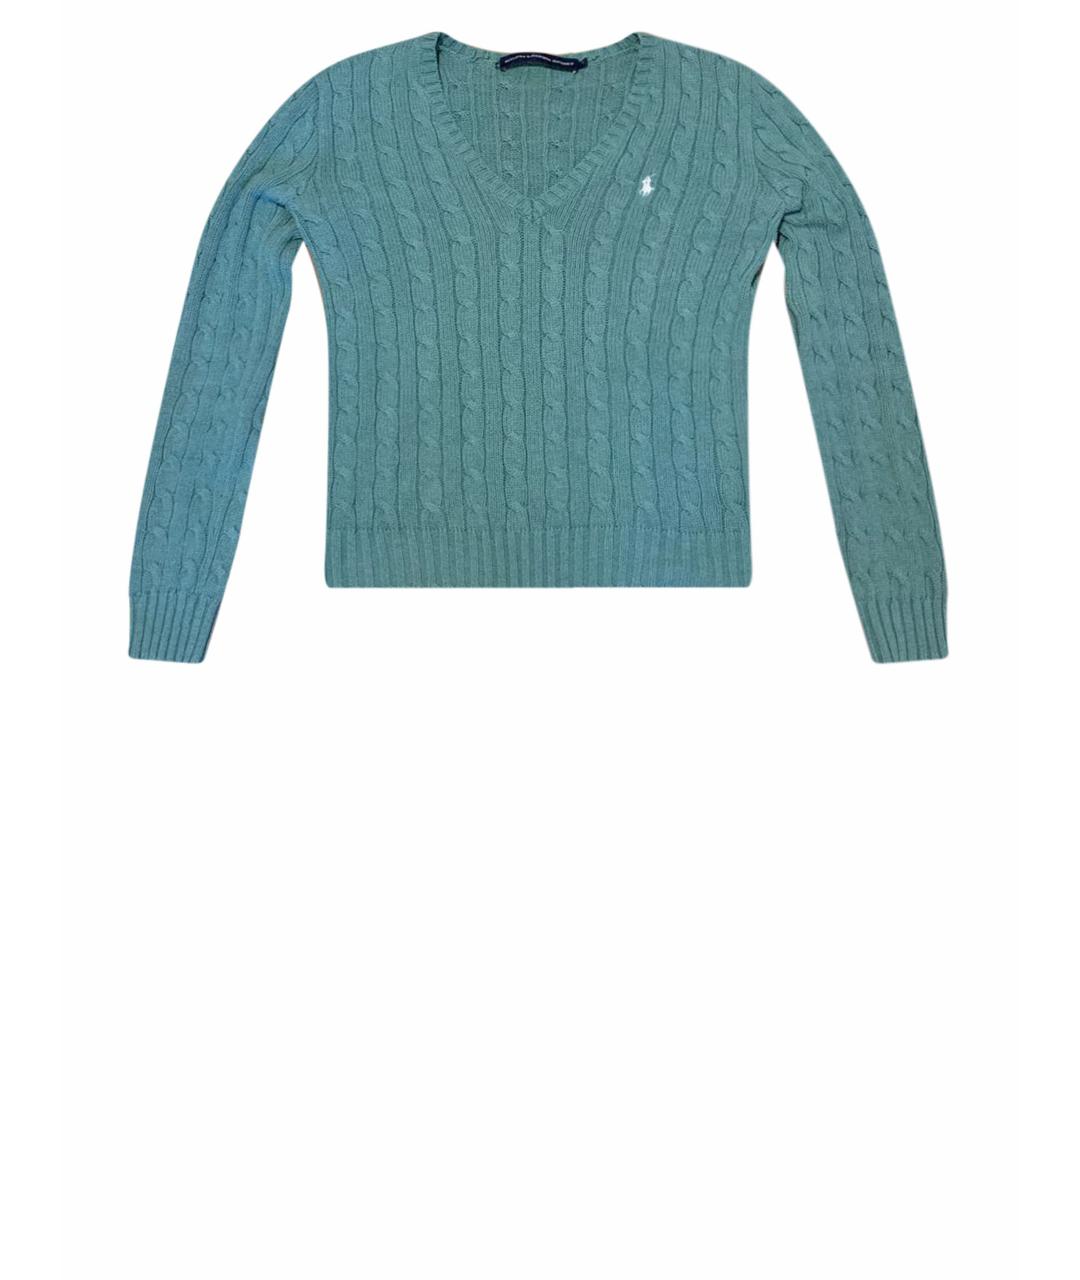 RALPH LAUREN COLLECTION Зеленый хлопковый джемпер / свитер, фото 1